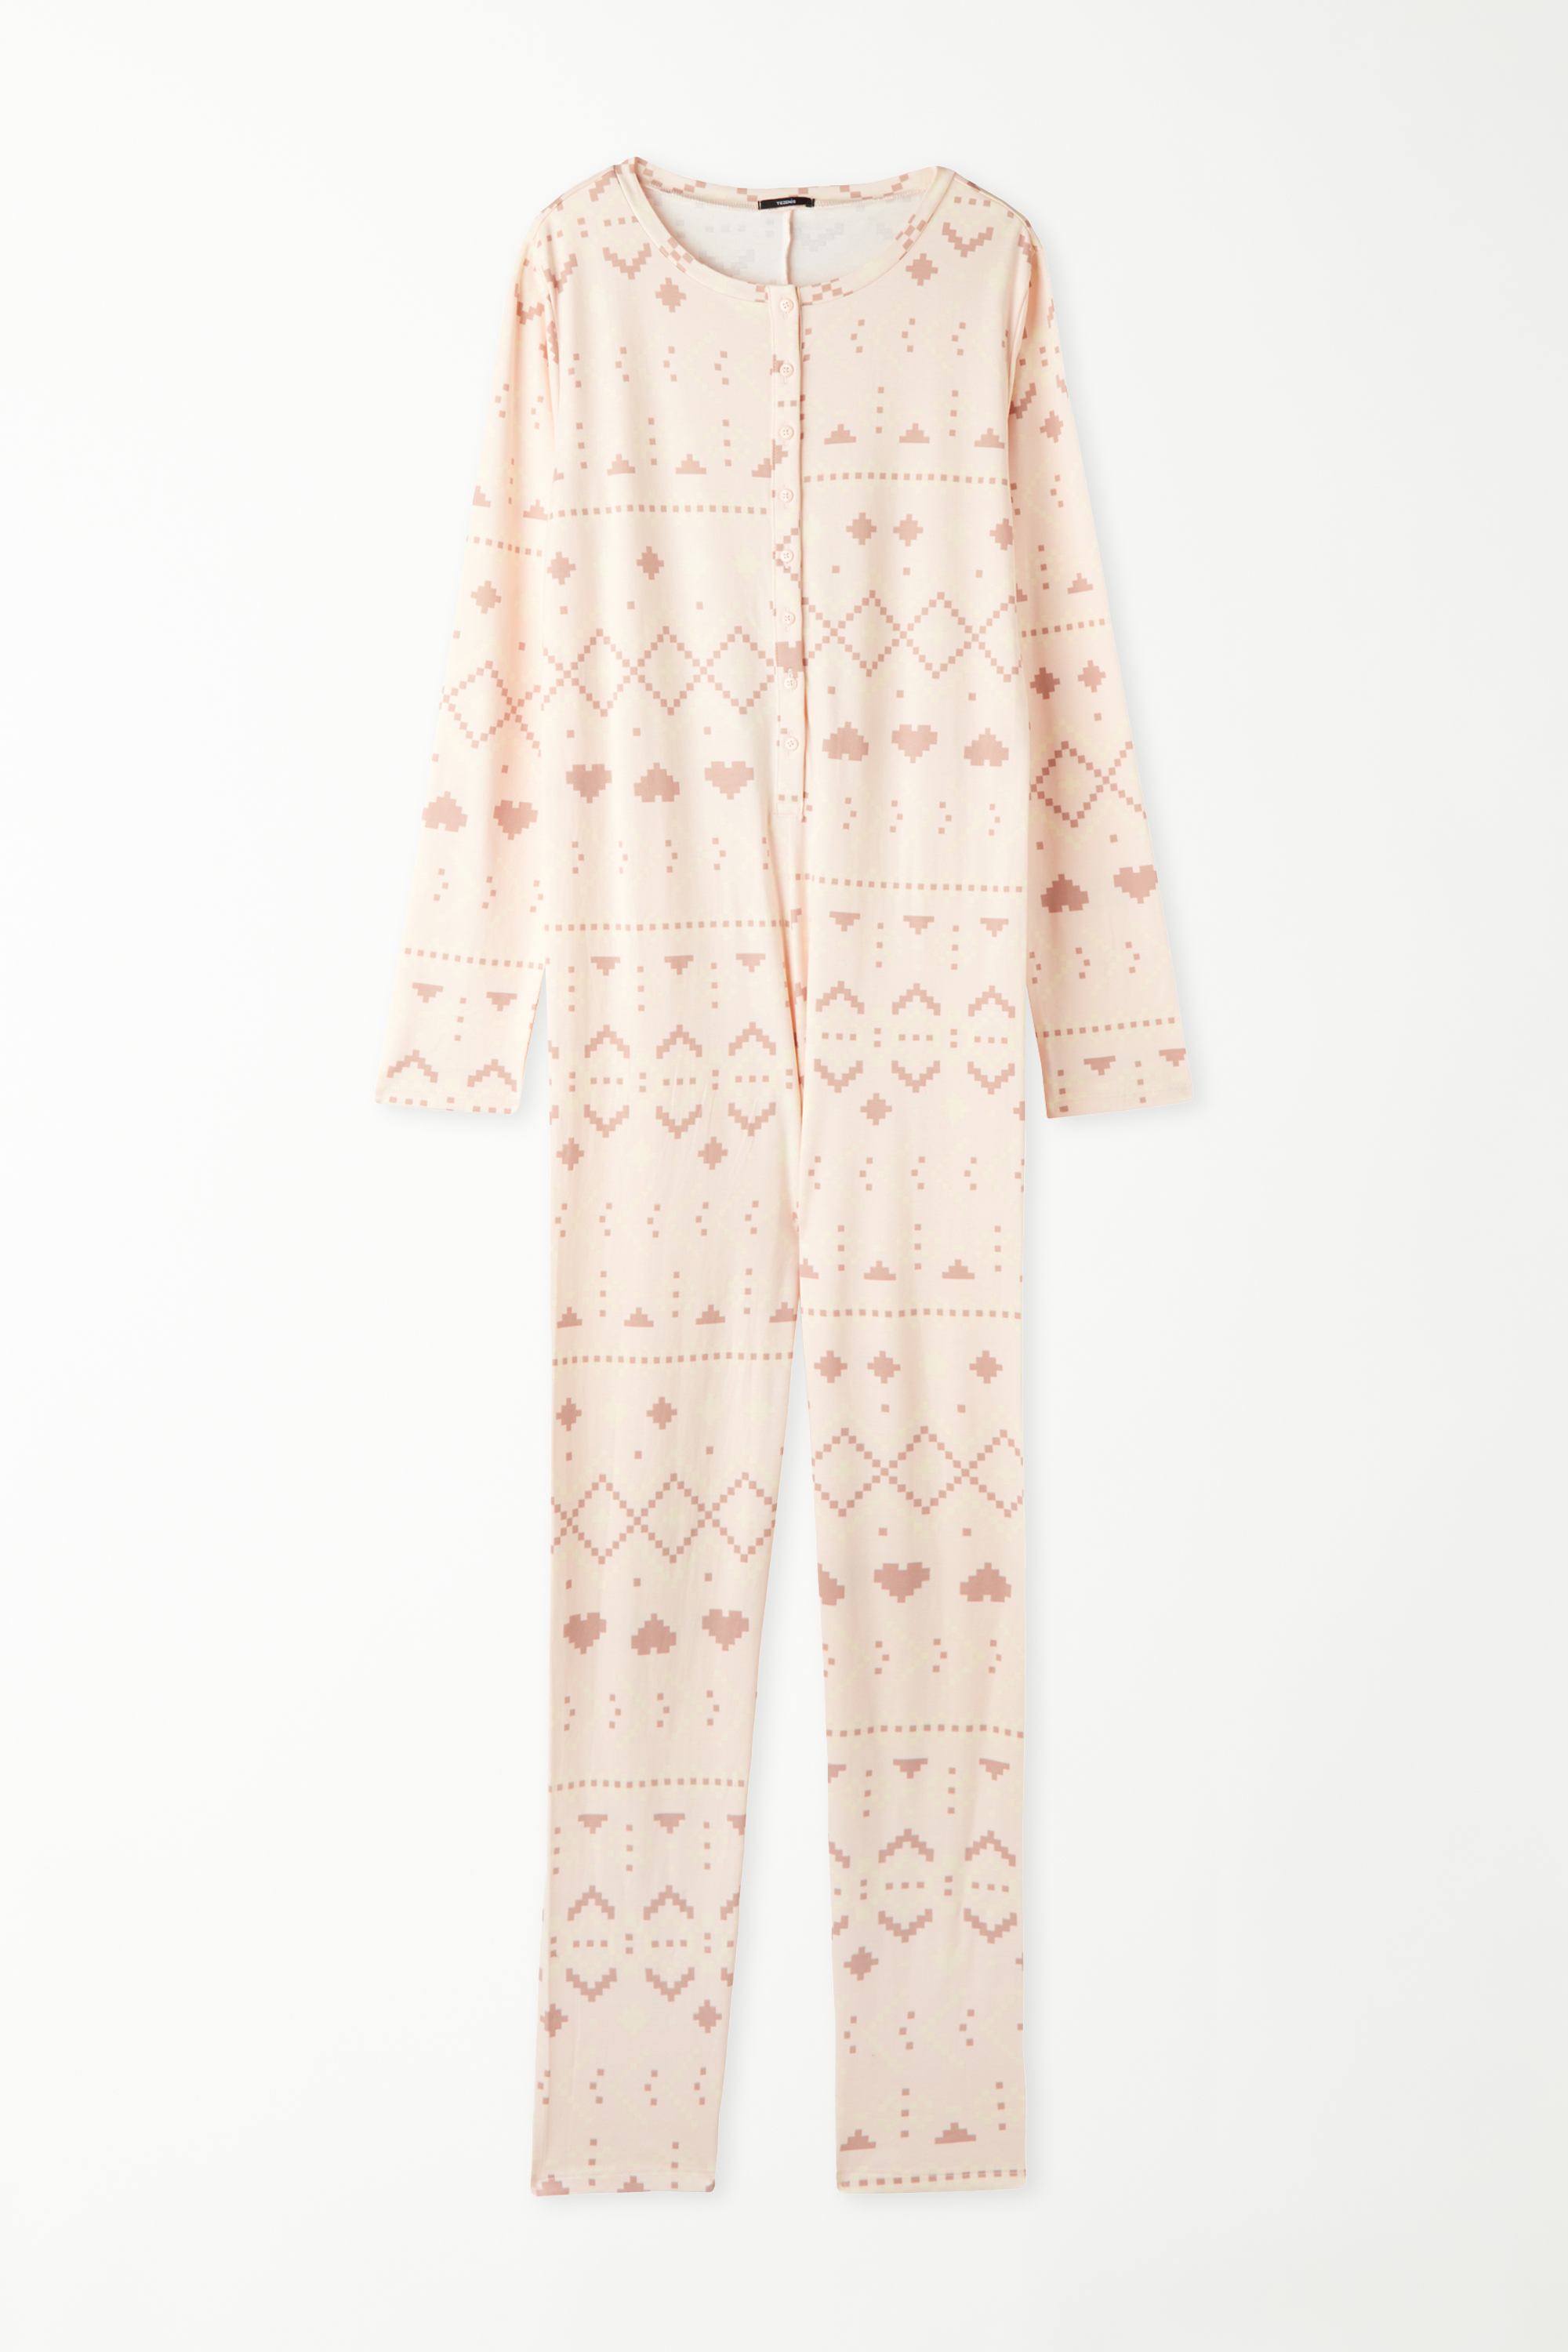 Nordic Print Heavy Cotton Onesie Pyjamas